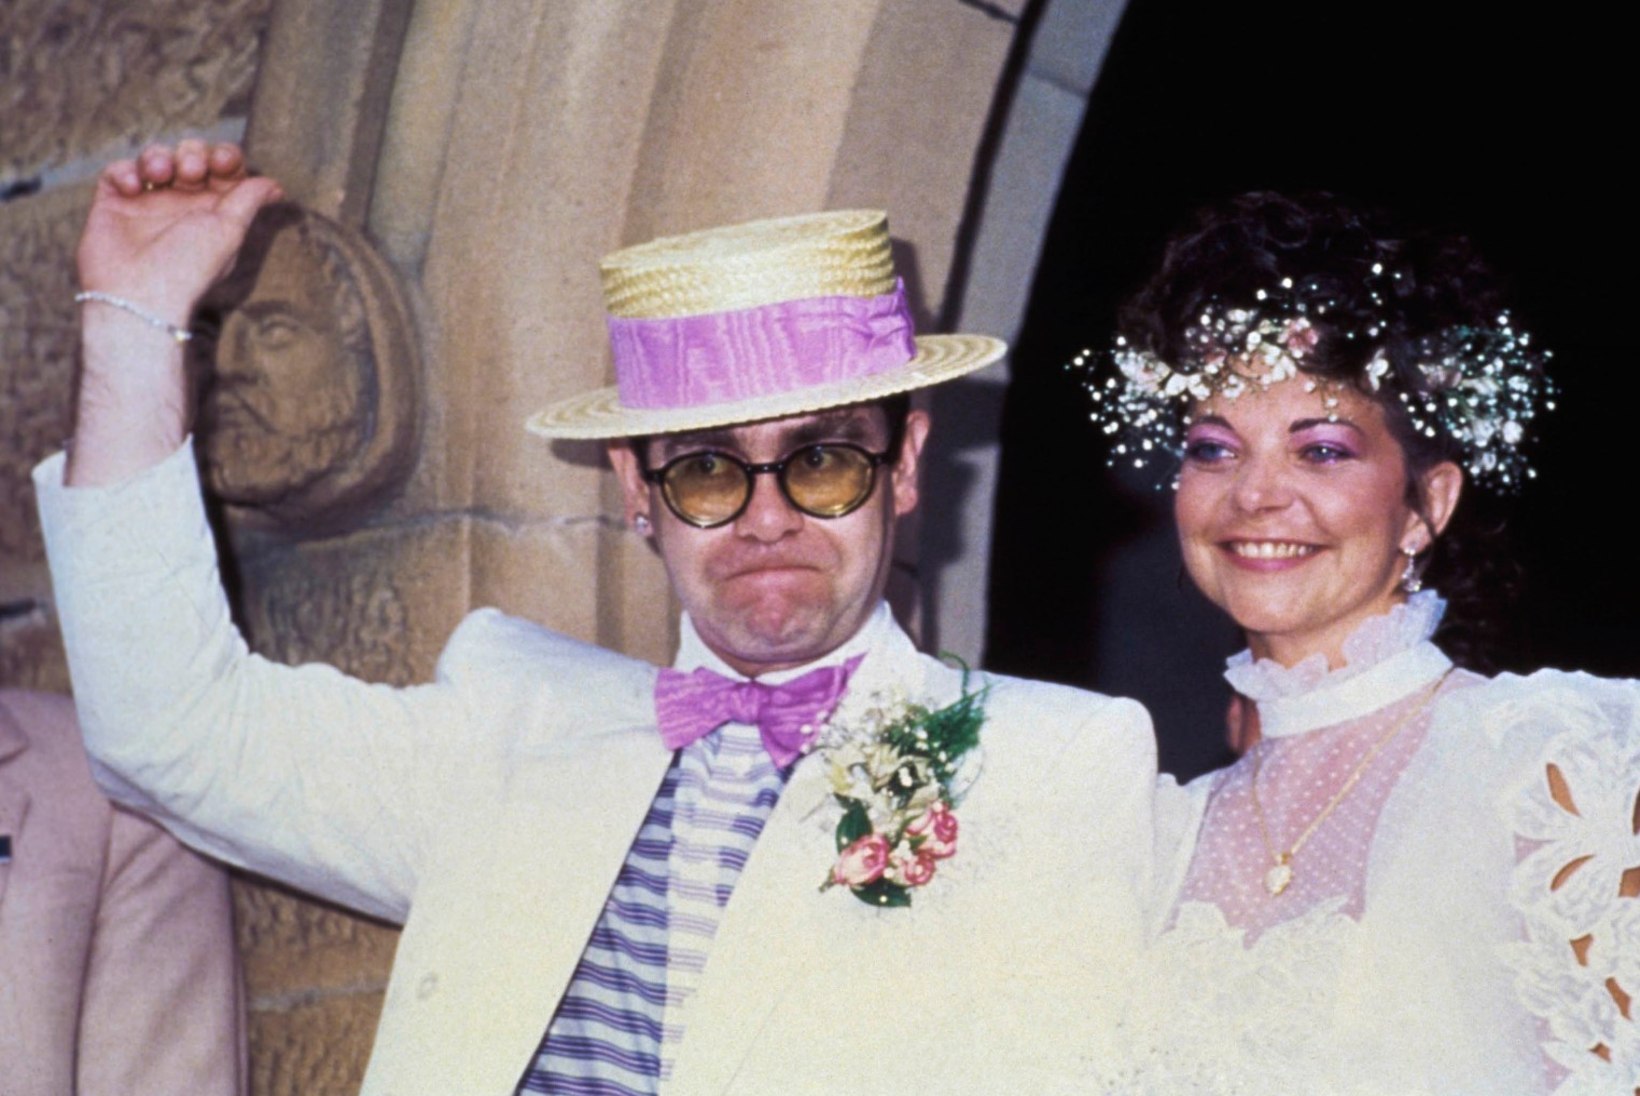 Elton ja tema eksnaine jõudsid kohtuvälisele kokkuleppele